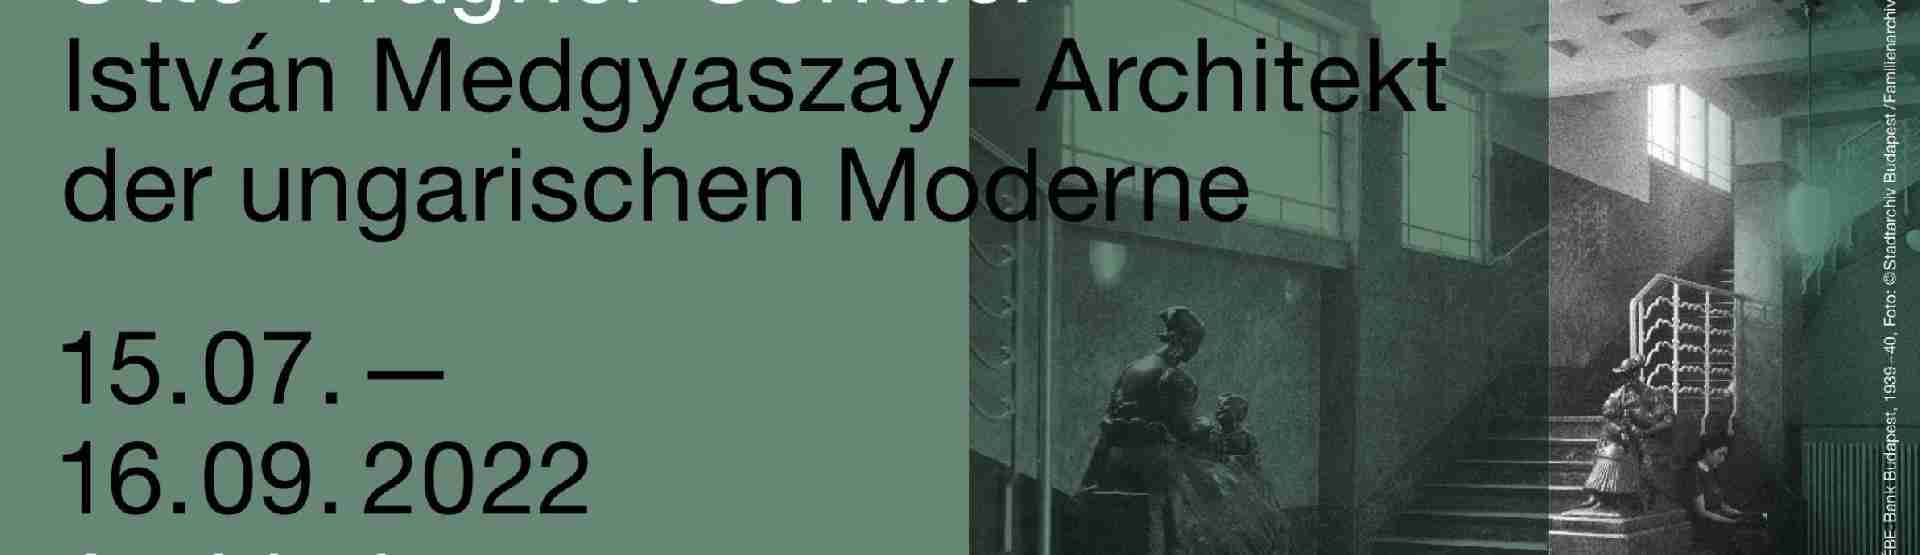 Kiállításmegnyitó | Otto-Wagner-Schüler – István Medgyaszay (1877–1959) – Architekt der ungarischen Moderne